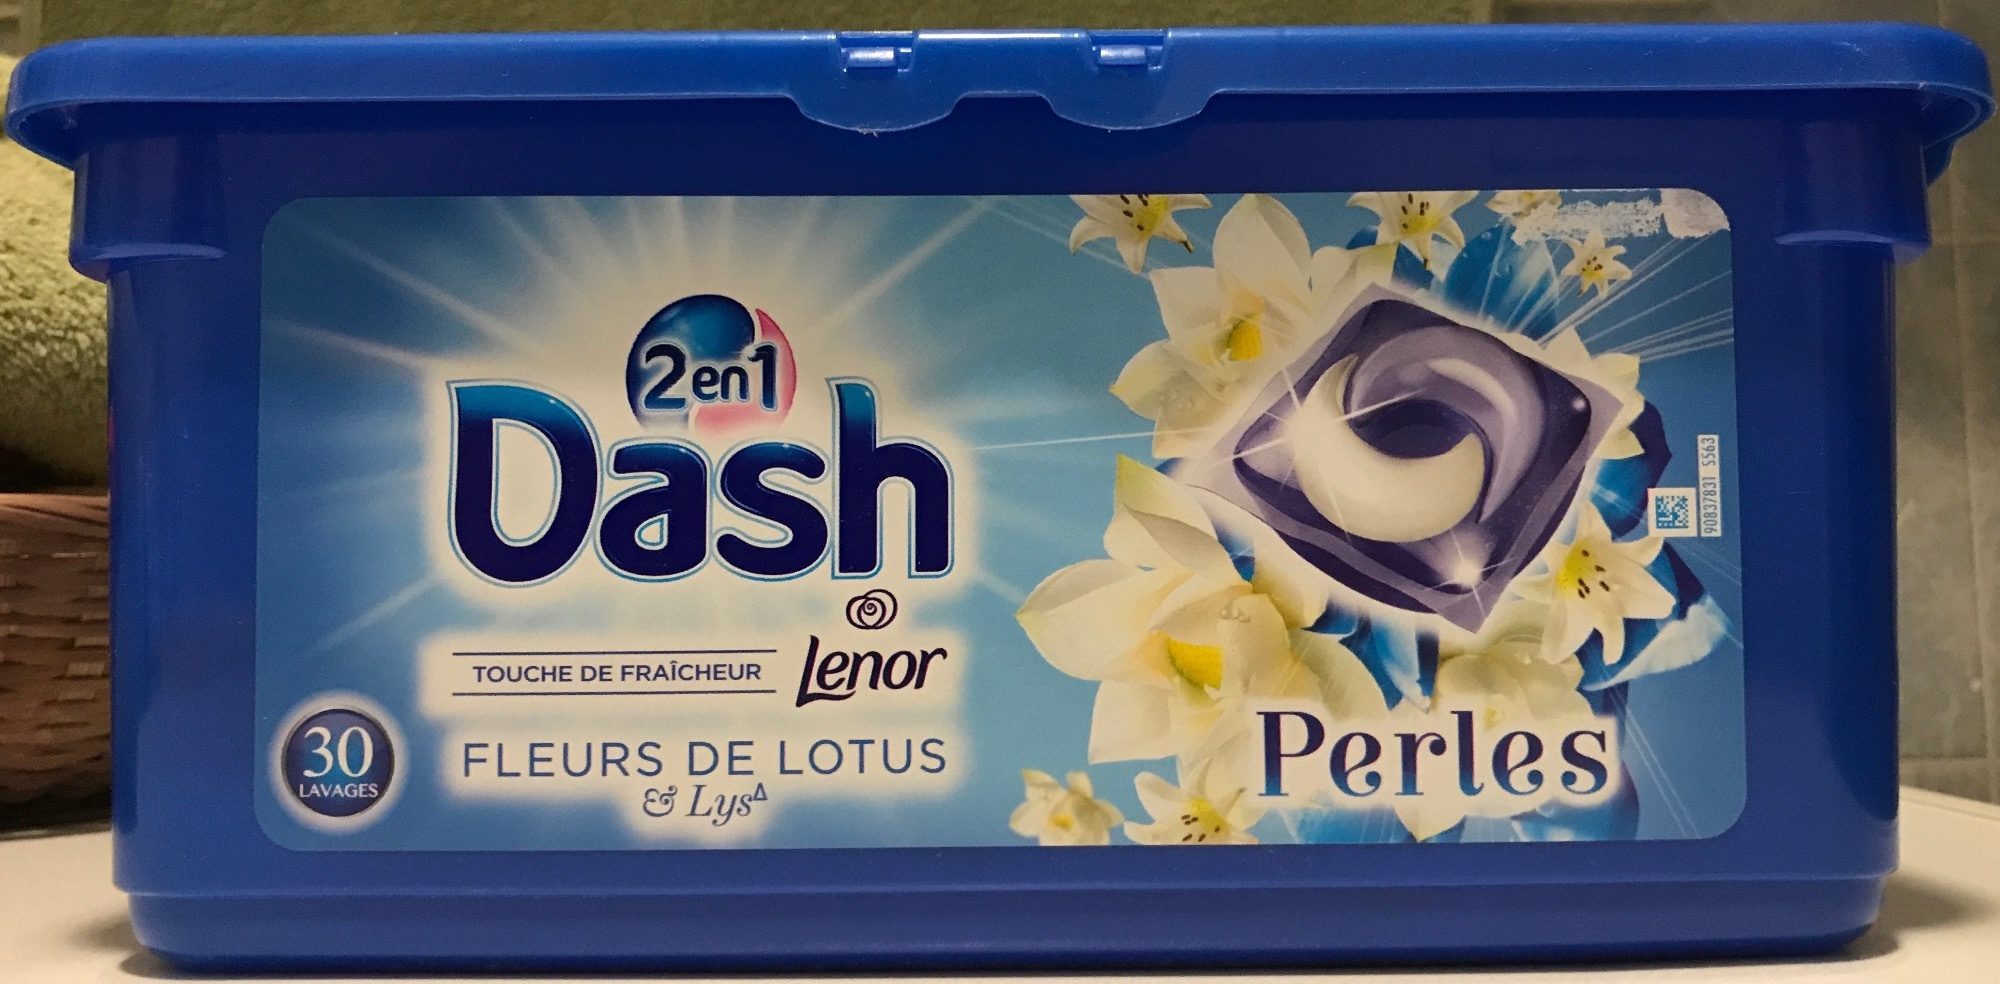 Dash 2 en 1 Touche de fraîcheur Perles Fleurs de Lotus & Lys - Product - fr